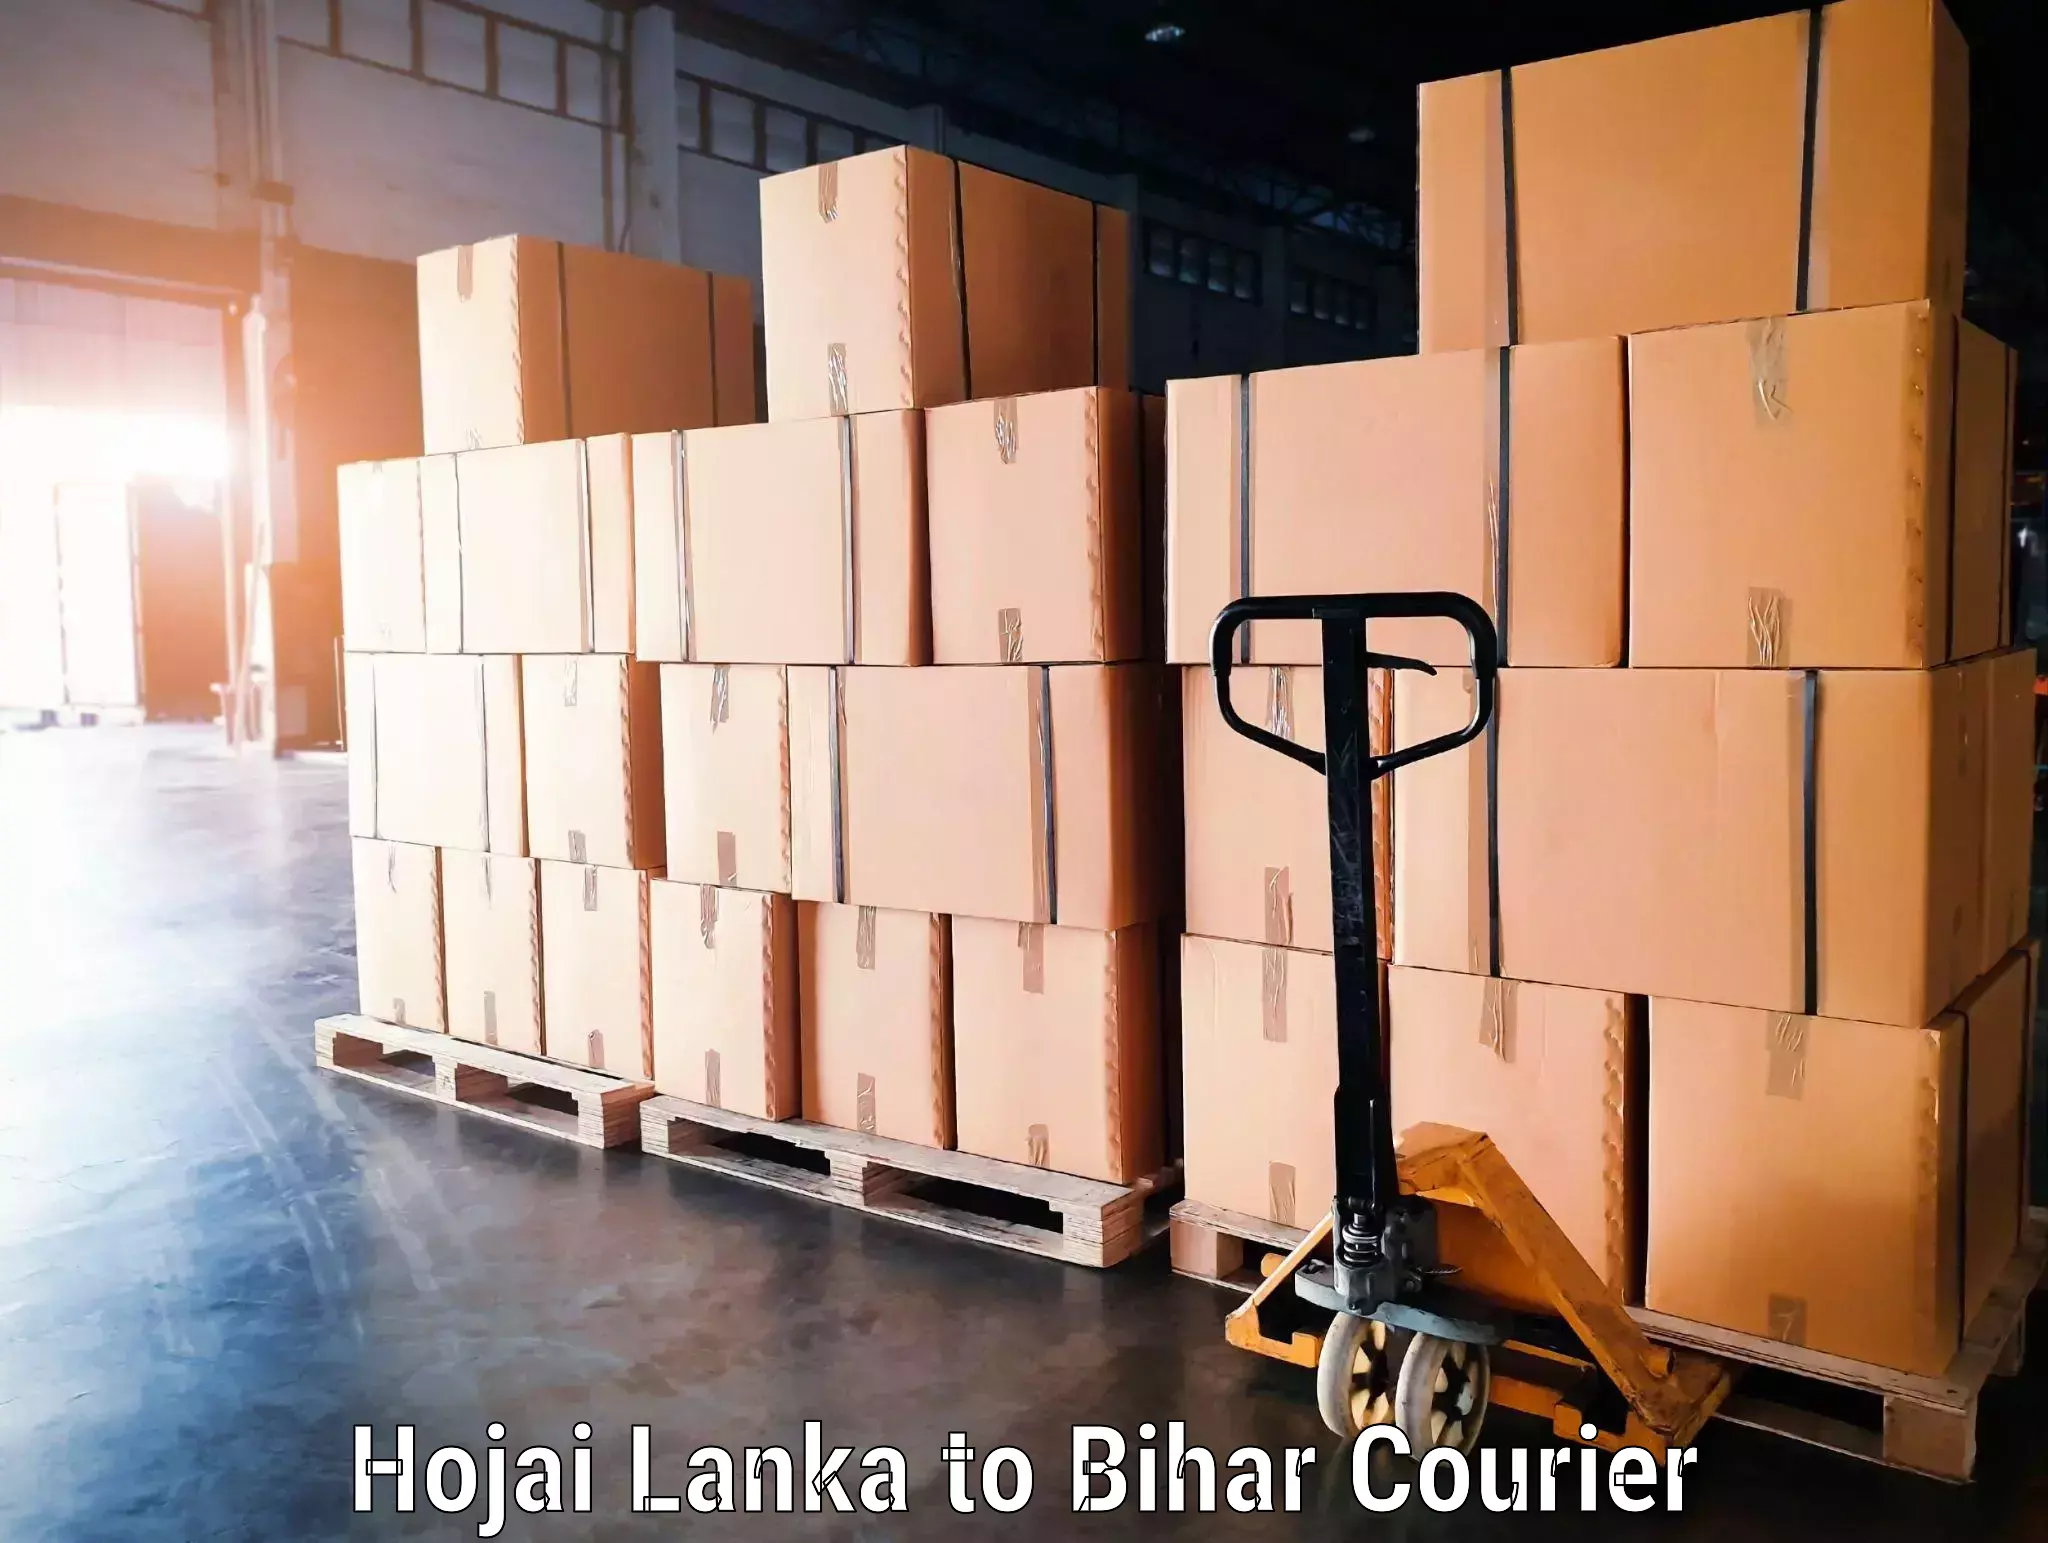 Luggage transit service Hojai Lanka to Bihar